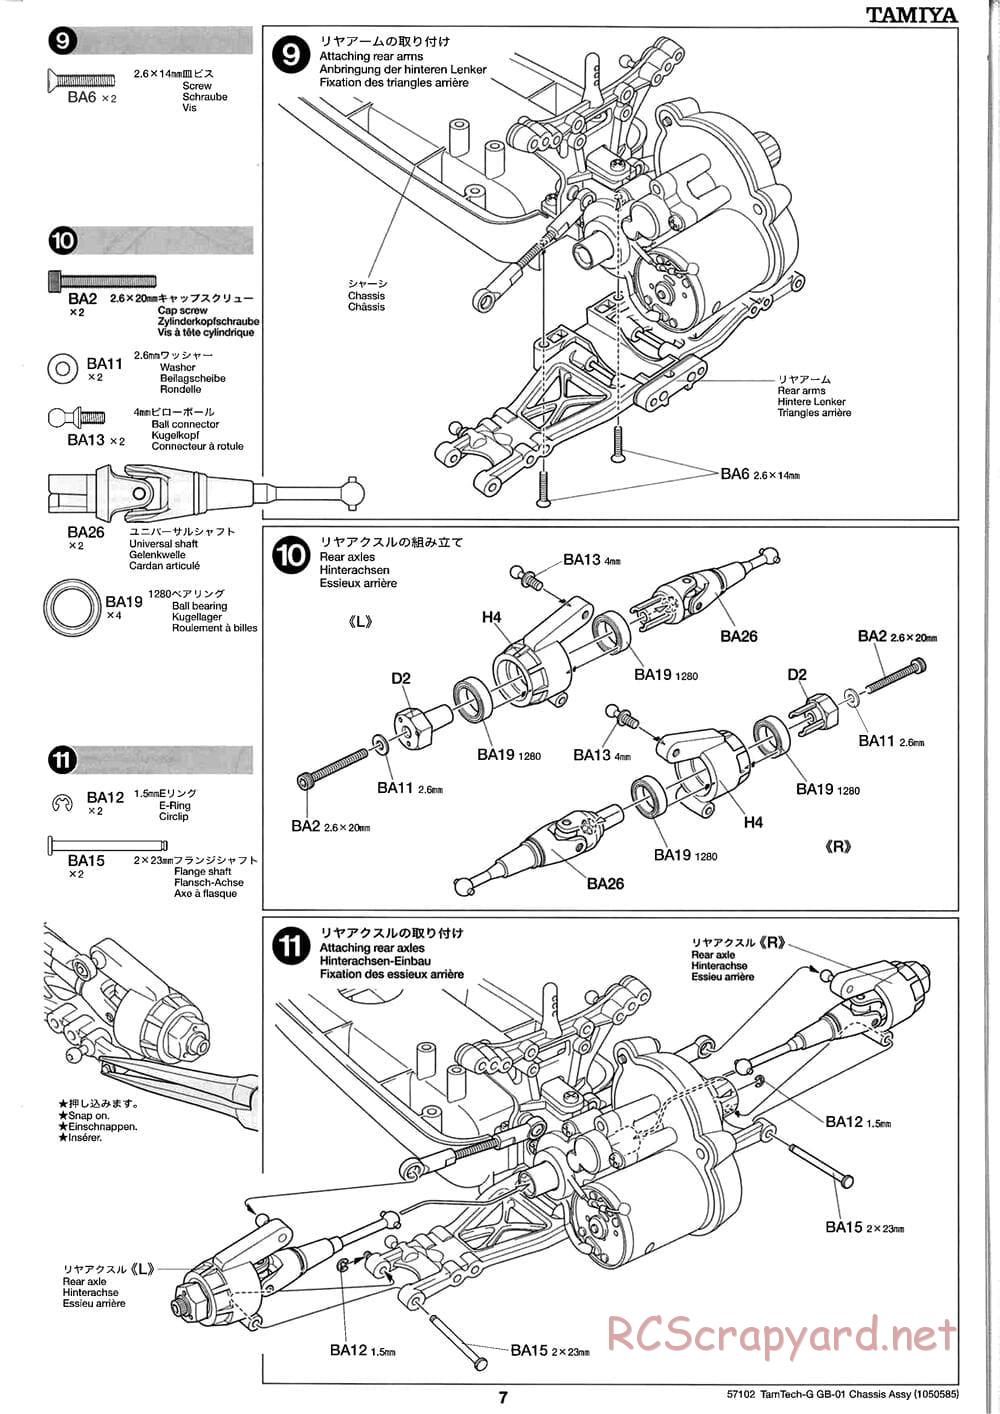 Tamiya - GB-01 Chassis - Manual - Page 7